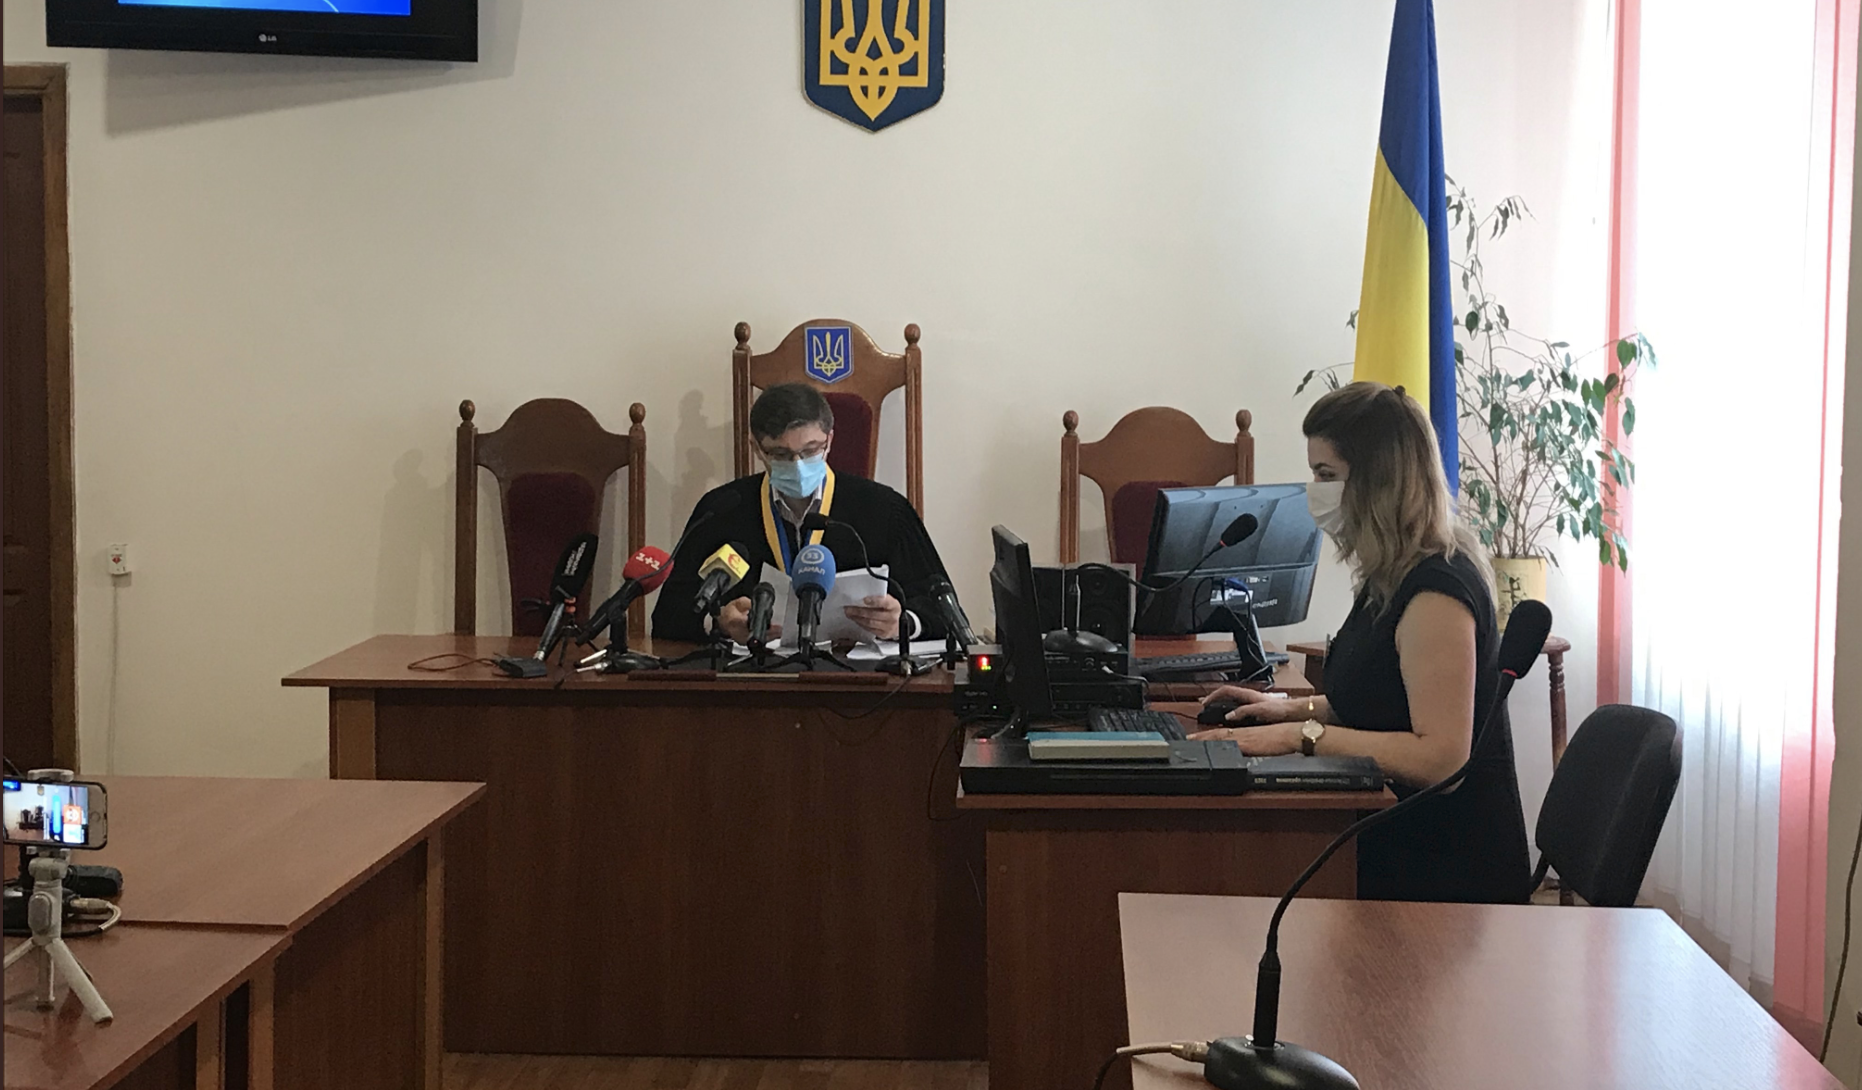 Зеленского не оштрафовали за кофе в кафе из-за неприкосновенности, судья ждет разъяснений от ВС